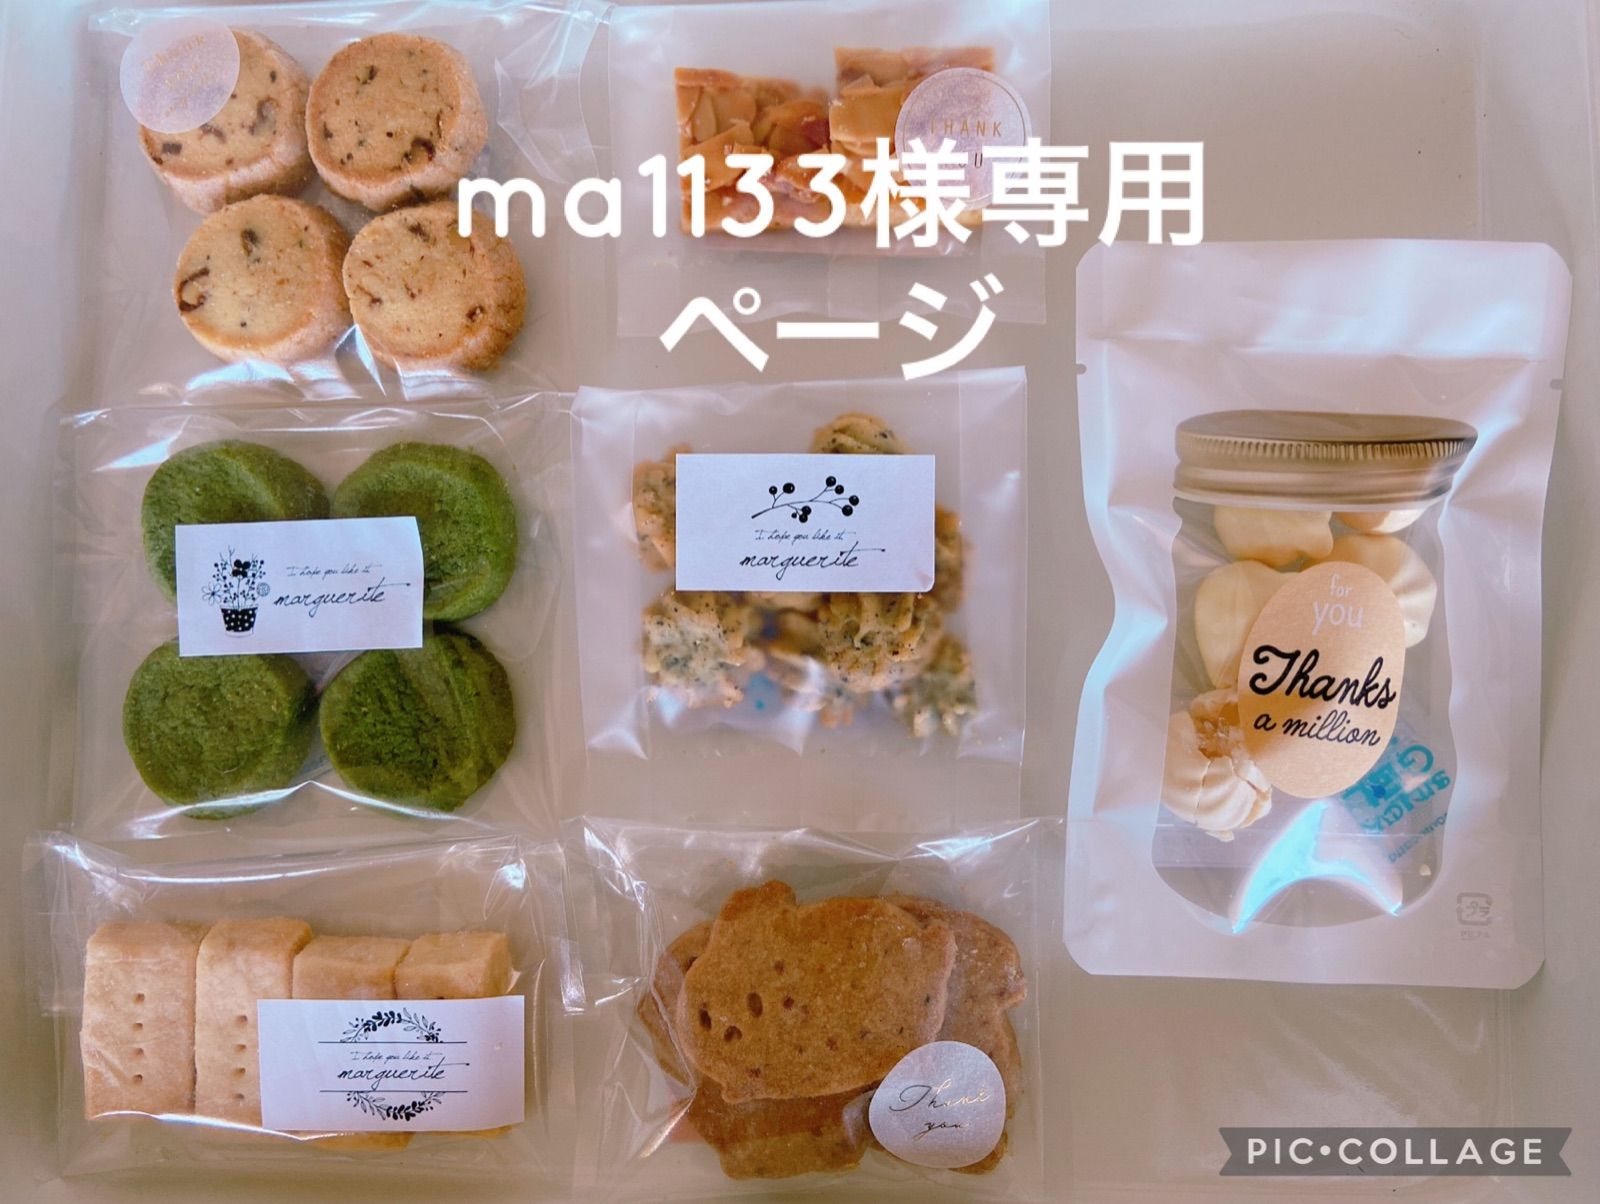 ma113様専用margueriteクッキーお試しセット - メルカリ